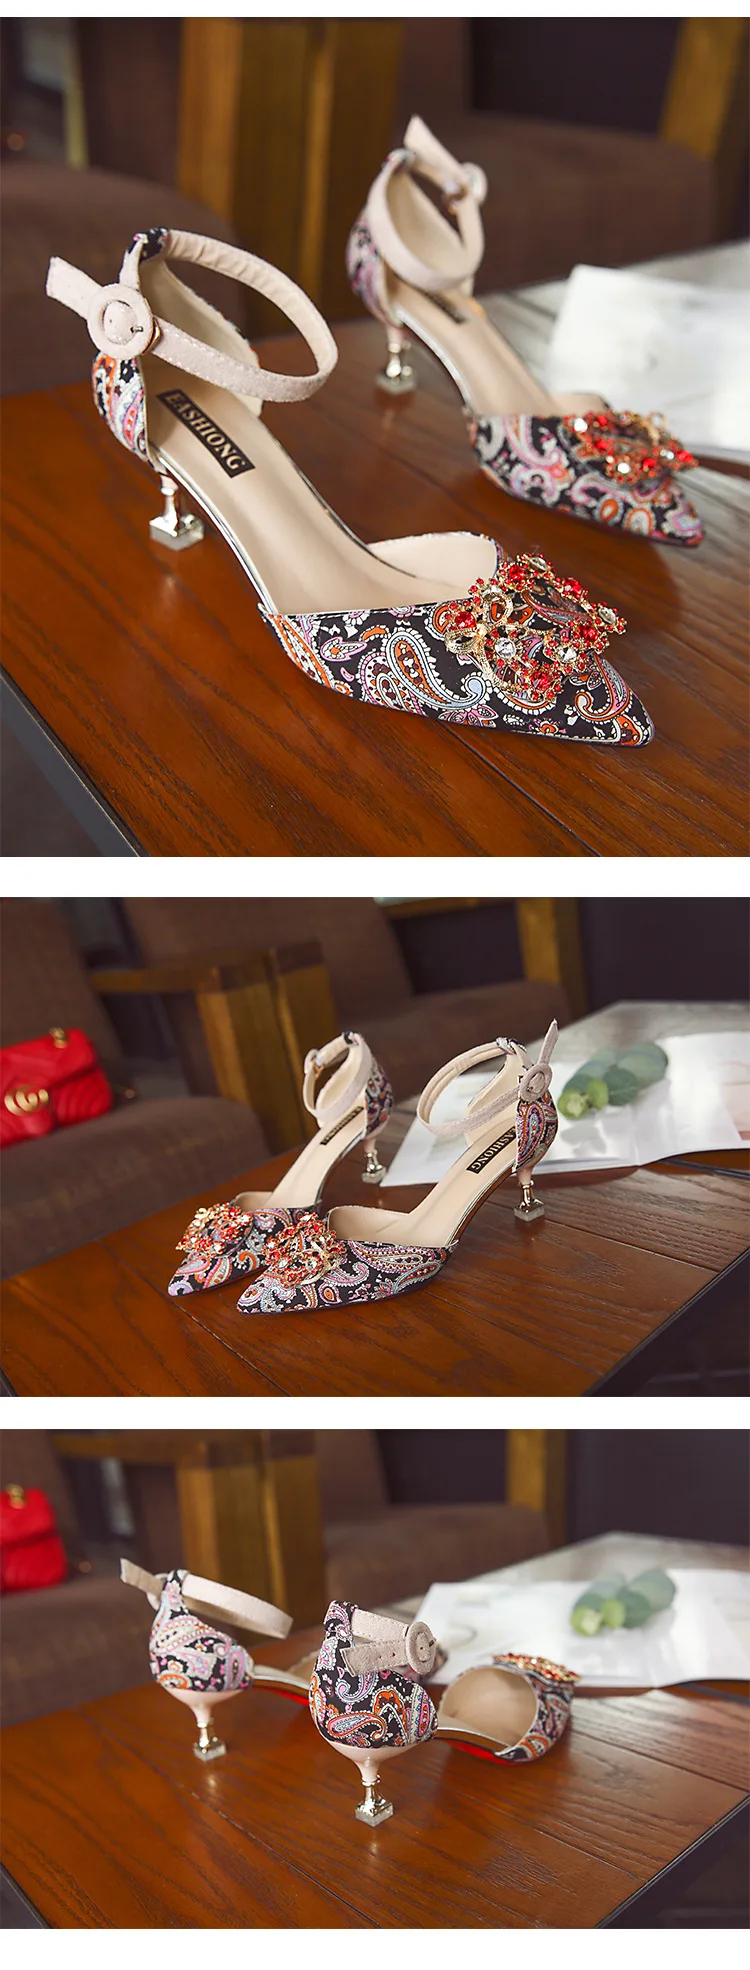 ZHENZHO с блестками кеды женская обувь украшенная бусинами стразы полые сумка; слипоны; женская обувь на высоких каблуках для торжеств обувь с острым носком